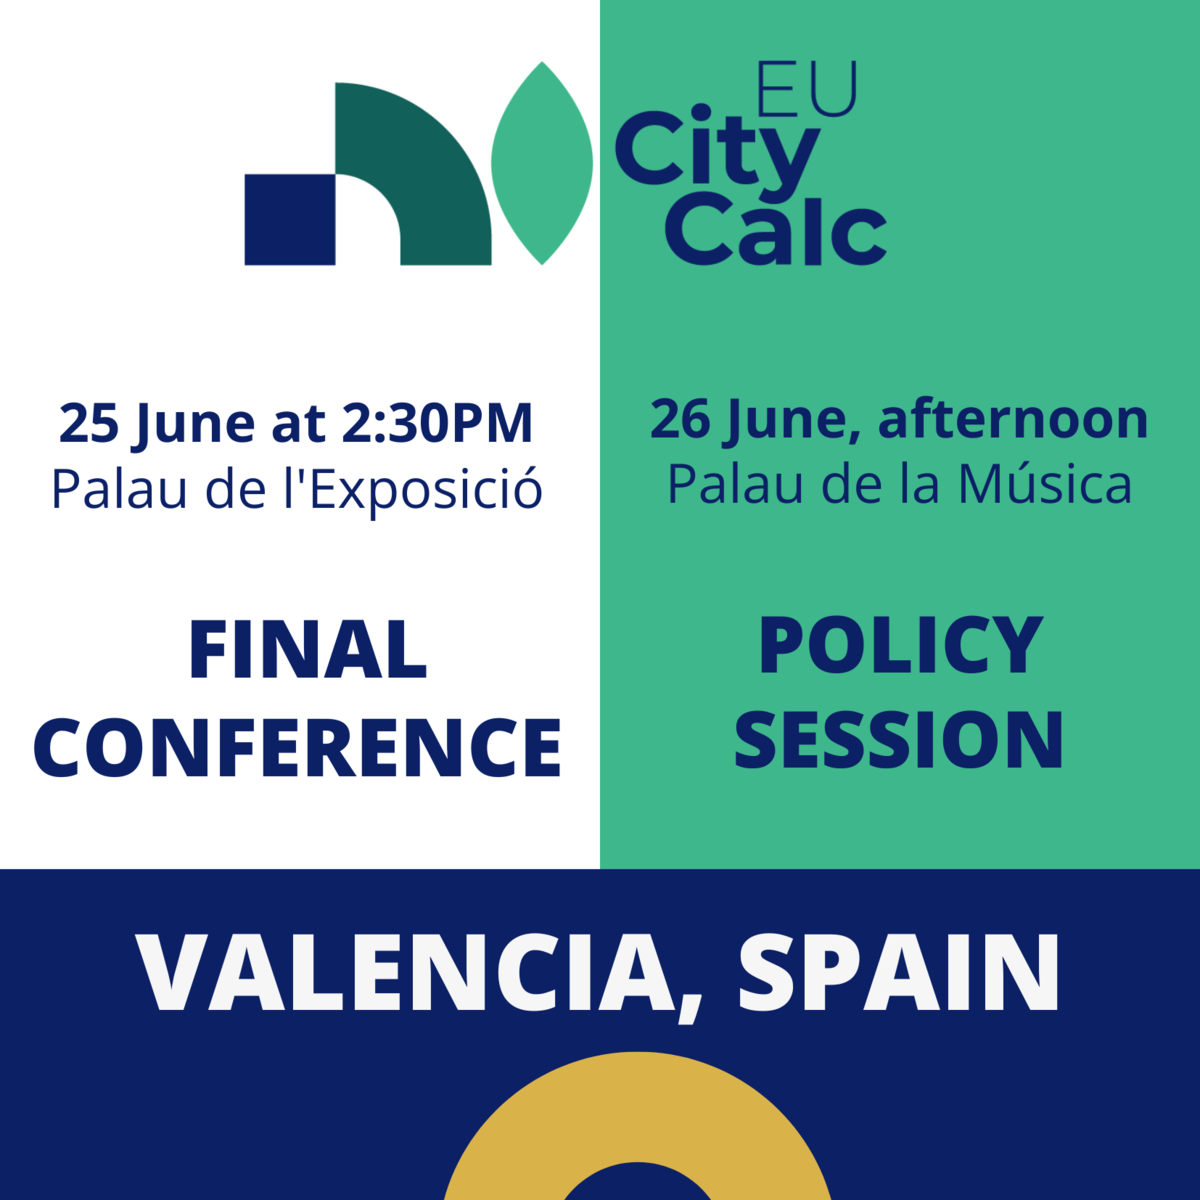 Junte-se a nós em Valência para celebrarmos juntos o encerramento do projeto EUCityCalc